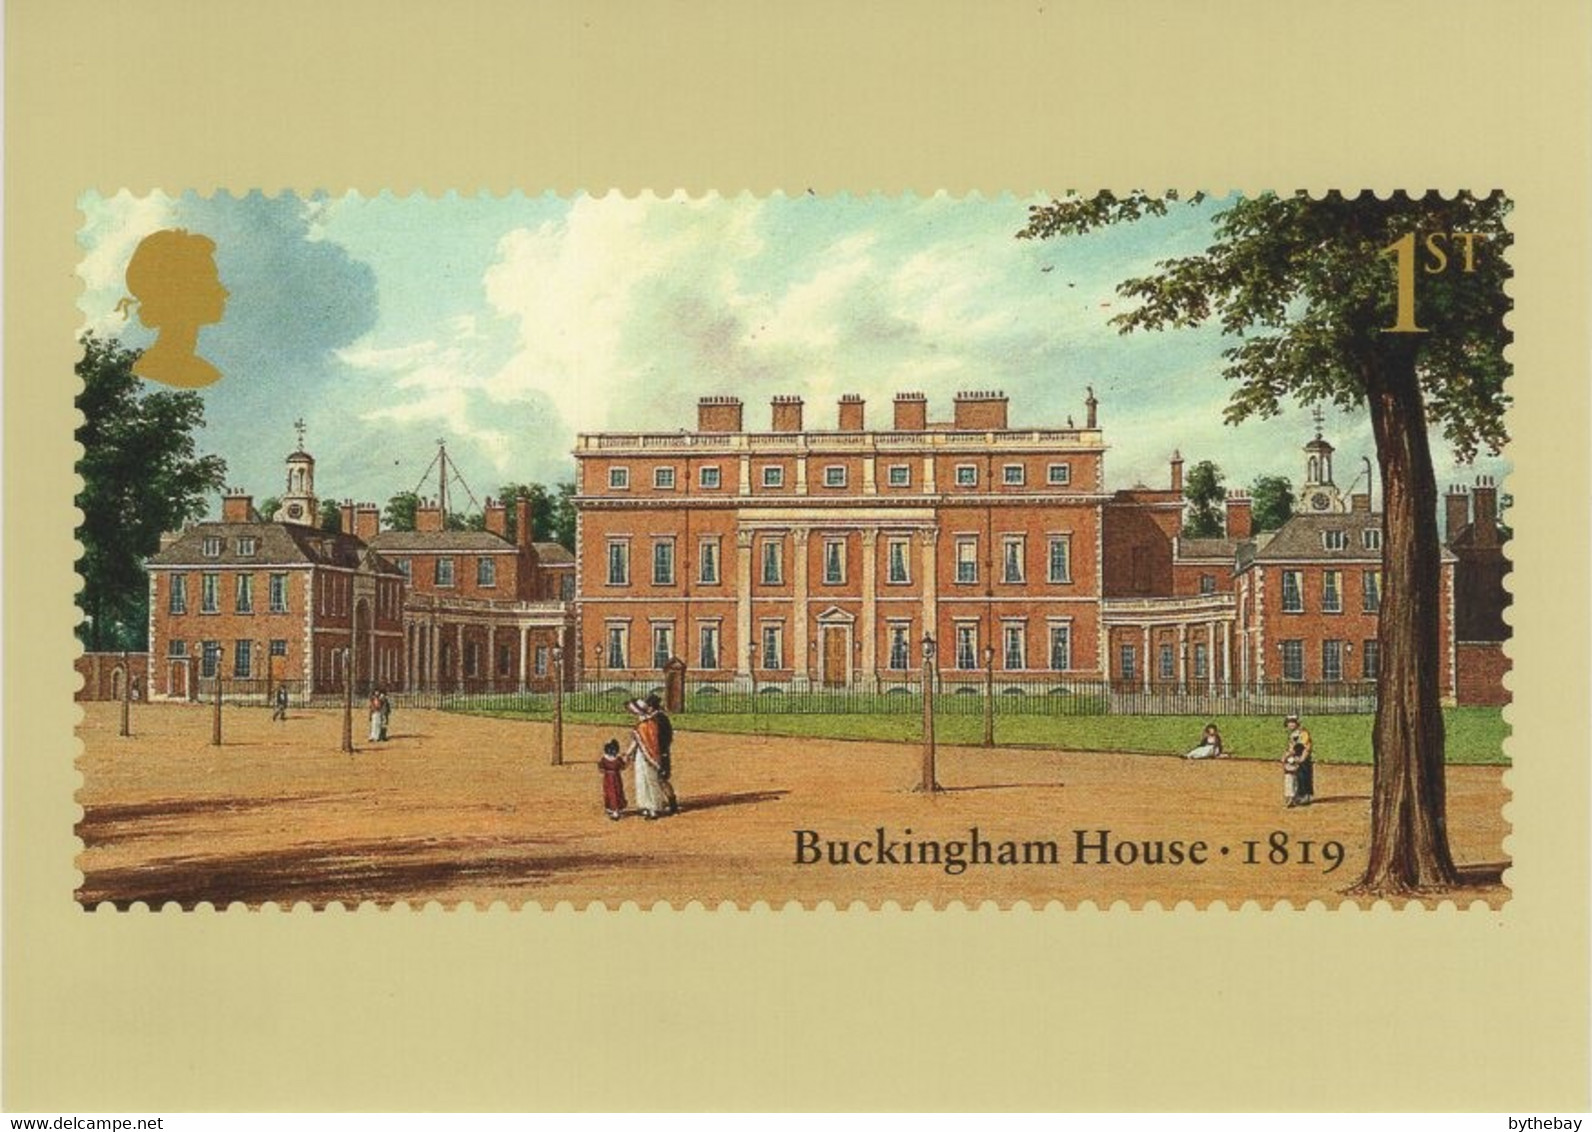 Great Britain 2014 PHQ Card Sc 3282 1st Buckingham House 1819 - PHQ Karten